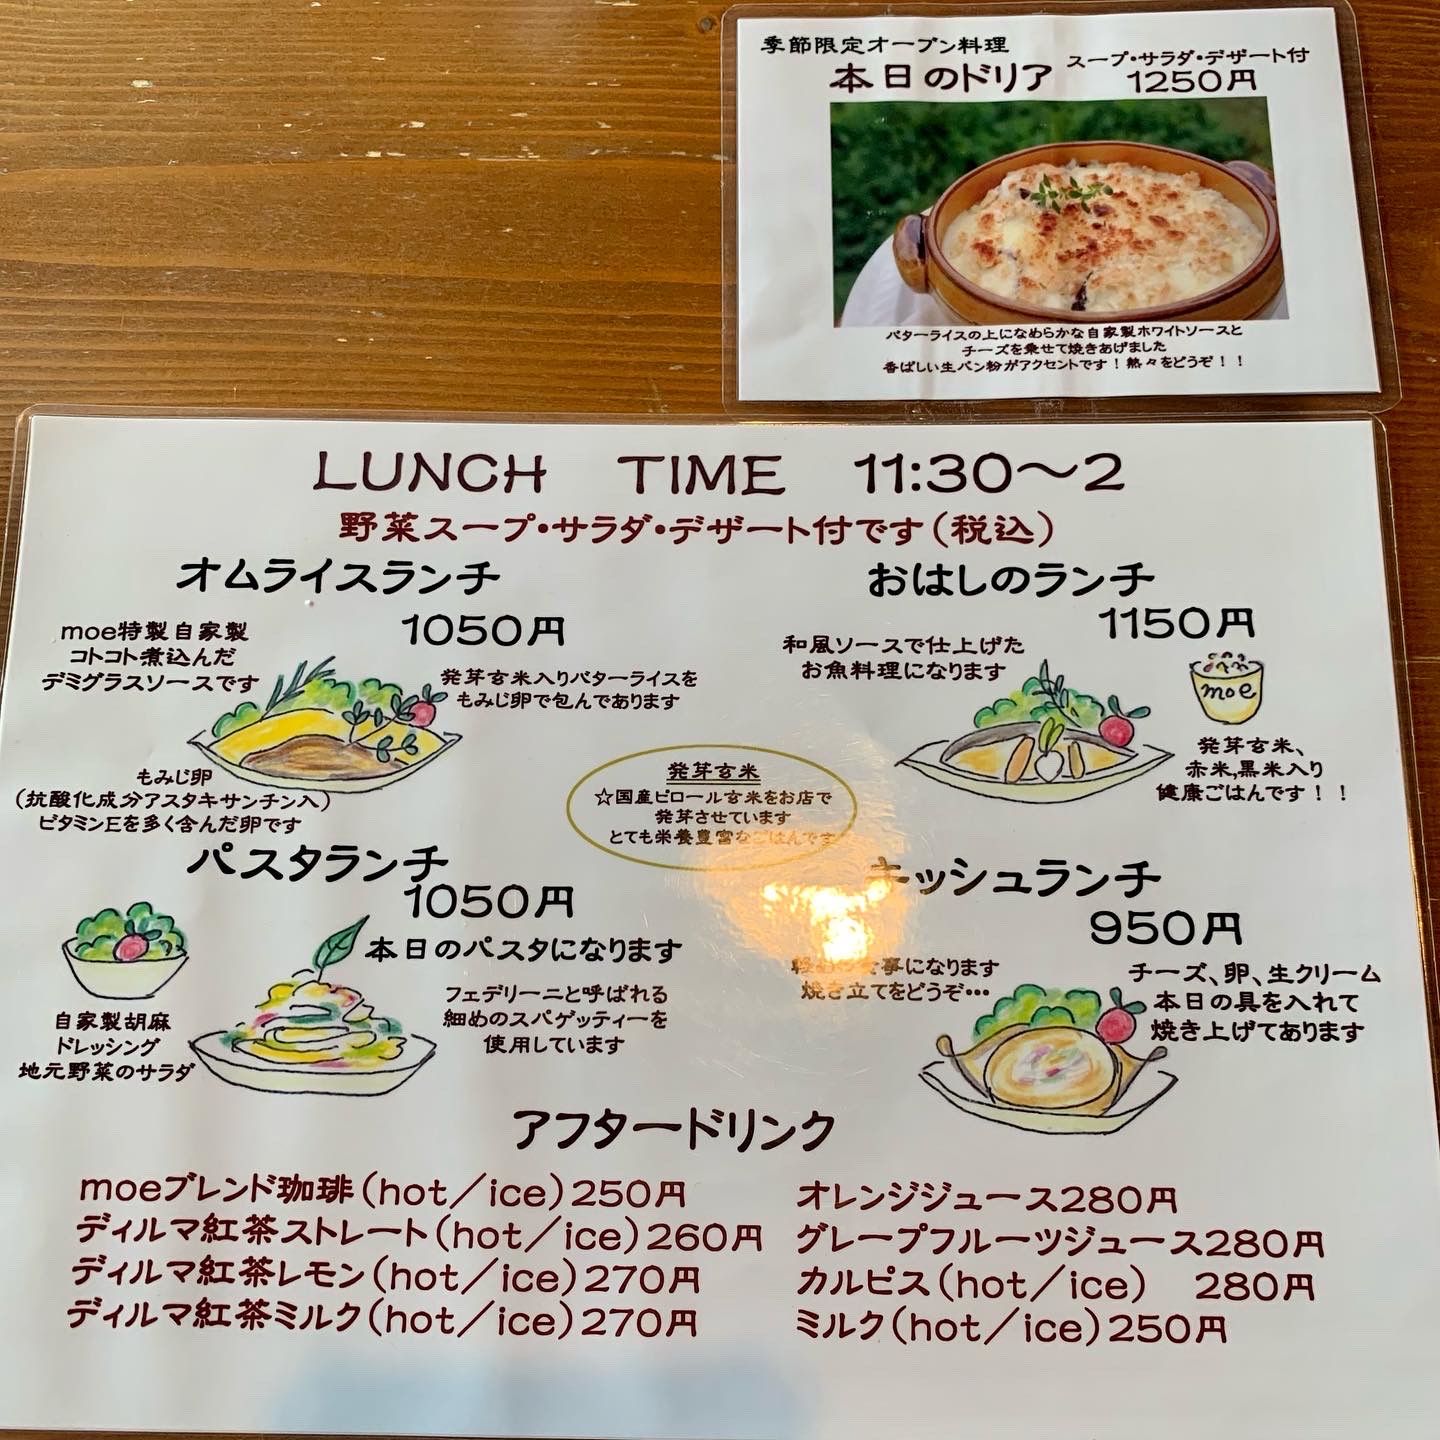 バムセの のほほん日記 豊川 Cafe Moe ランチ